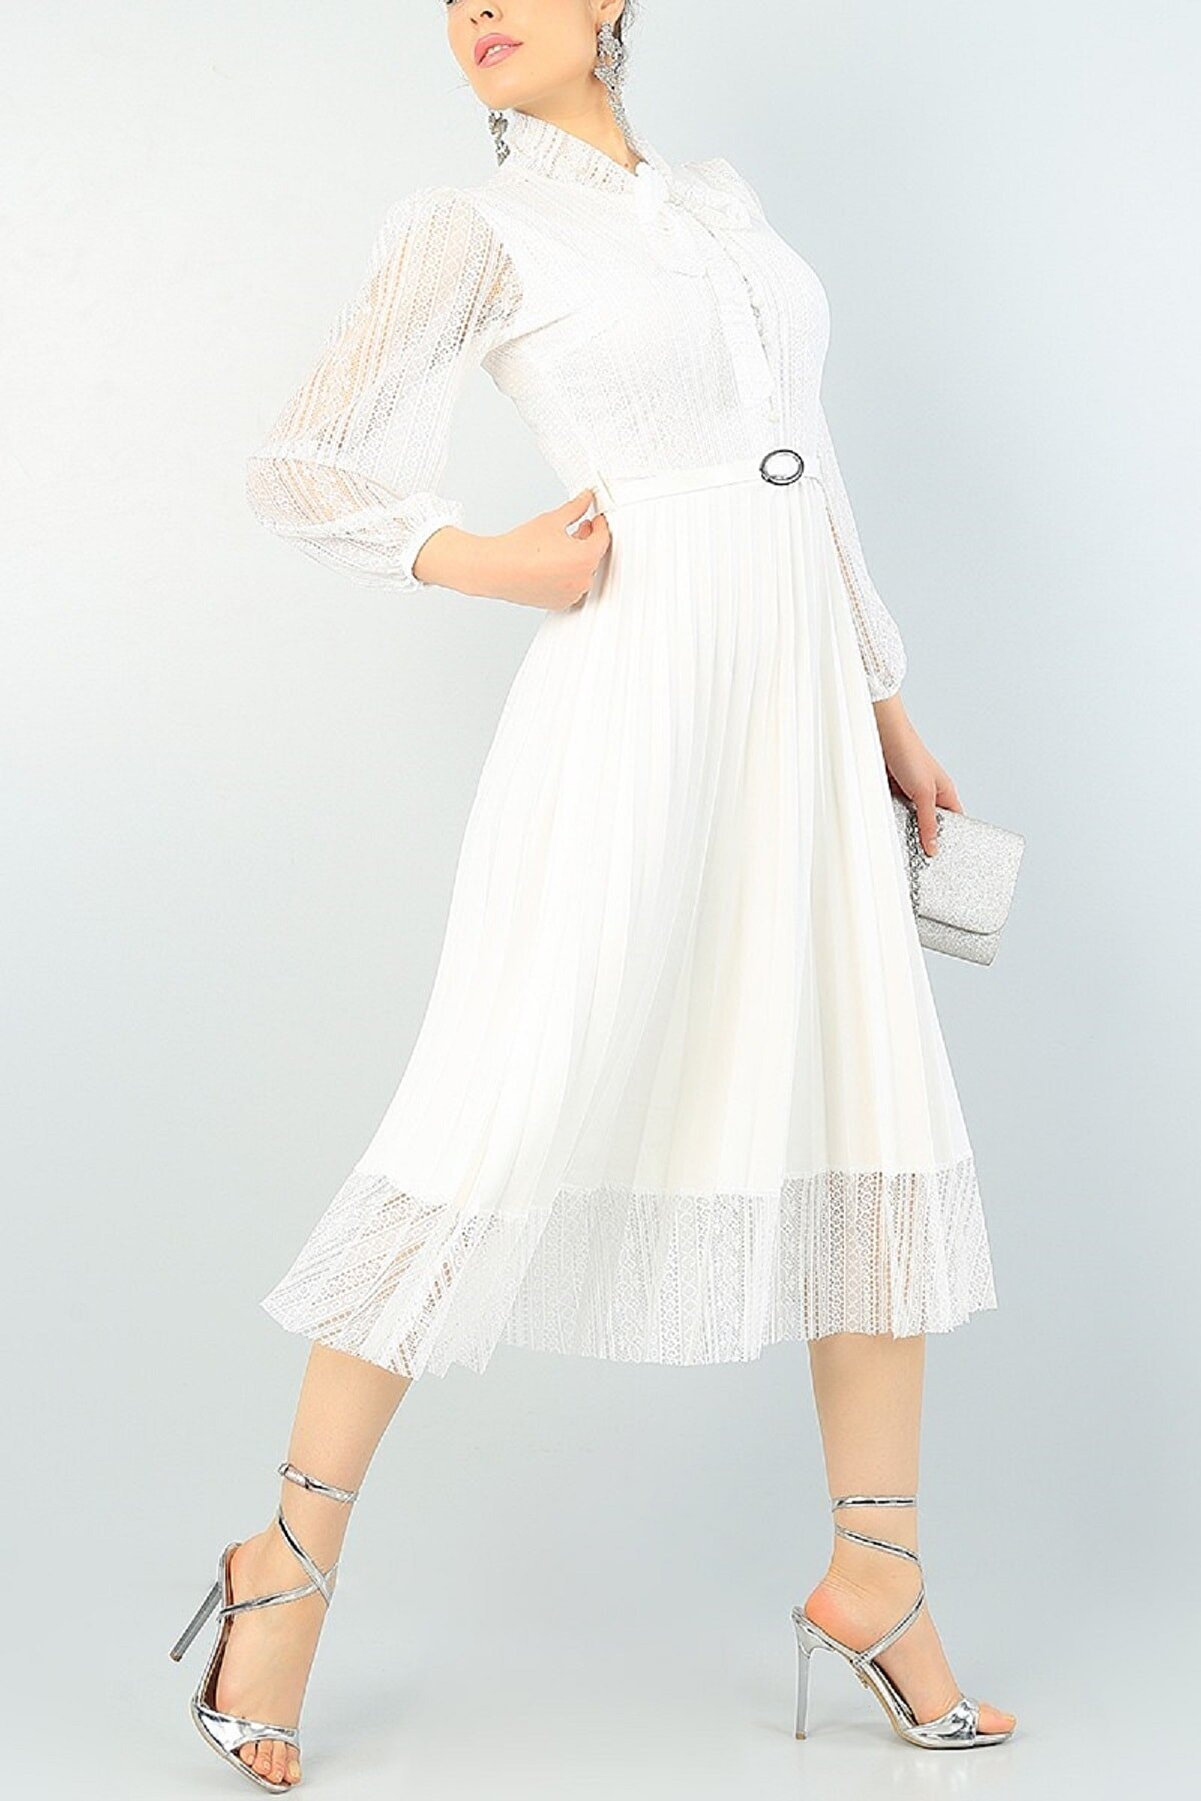 lovebox Pilise Detaylı Kemerli Tasarım Uzun Kollu Beyaz Dantel Abiye Elbise 65550